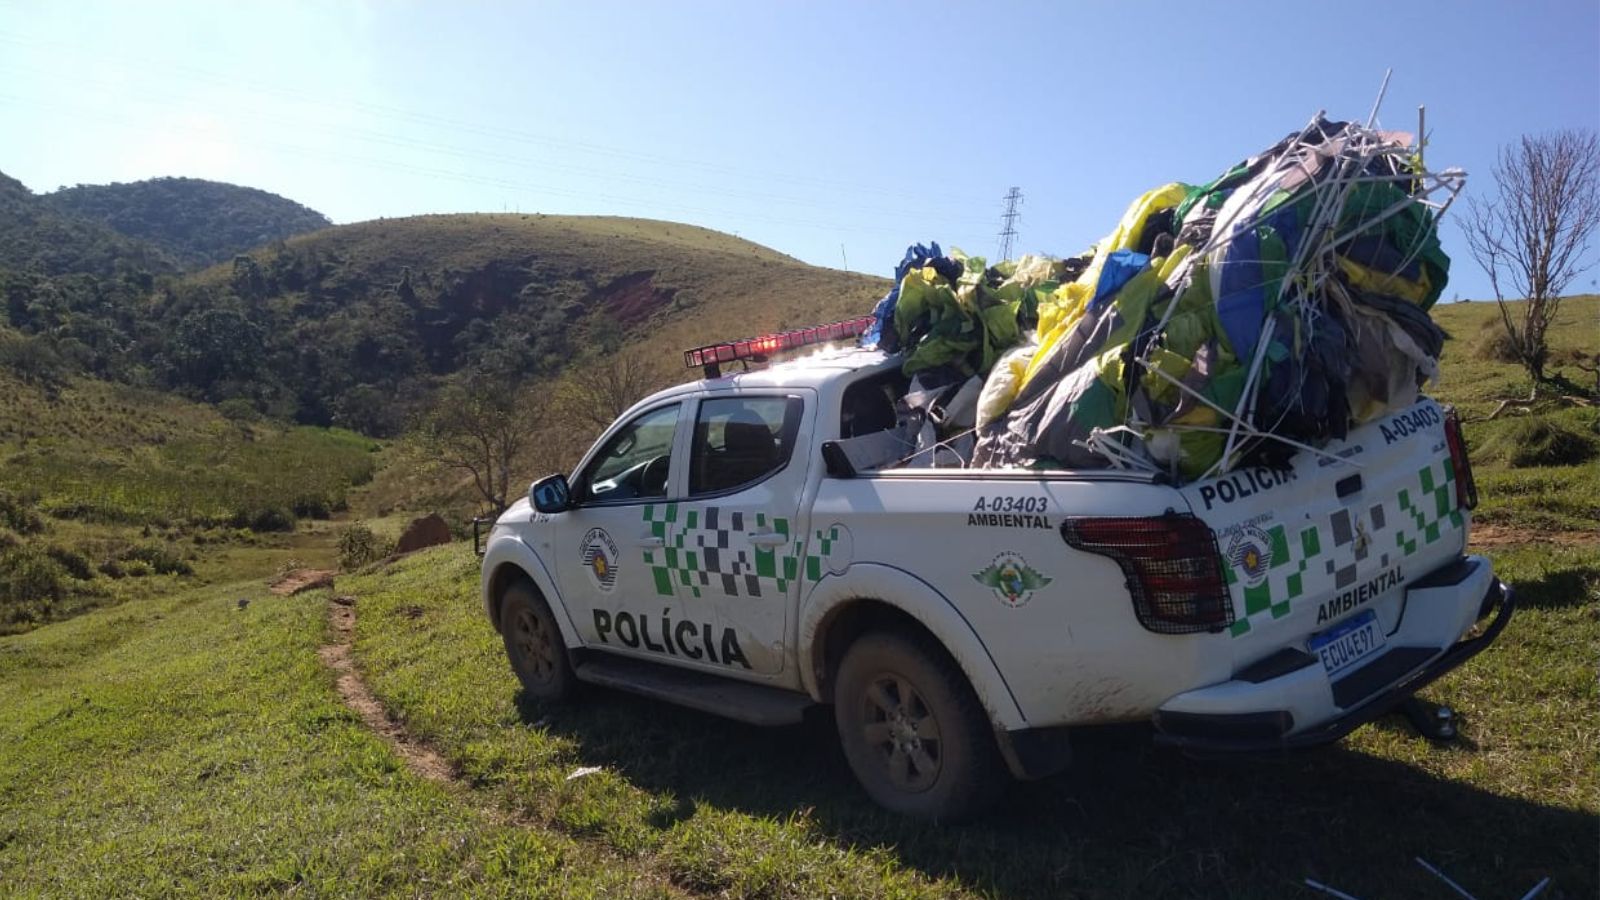 Caminhonete da Polícia Ambiental do Estado de São Paulo em uma área rural, carregando diversos balões desinflados e amassados na caçamba.